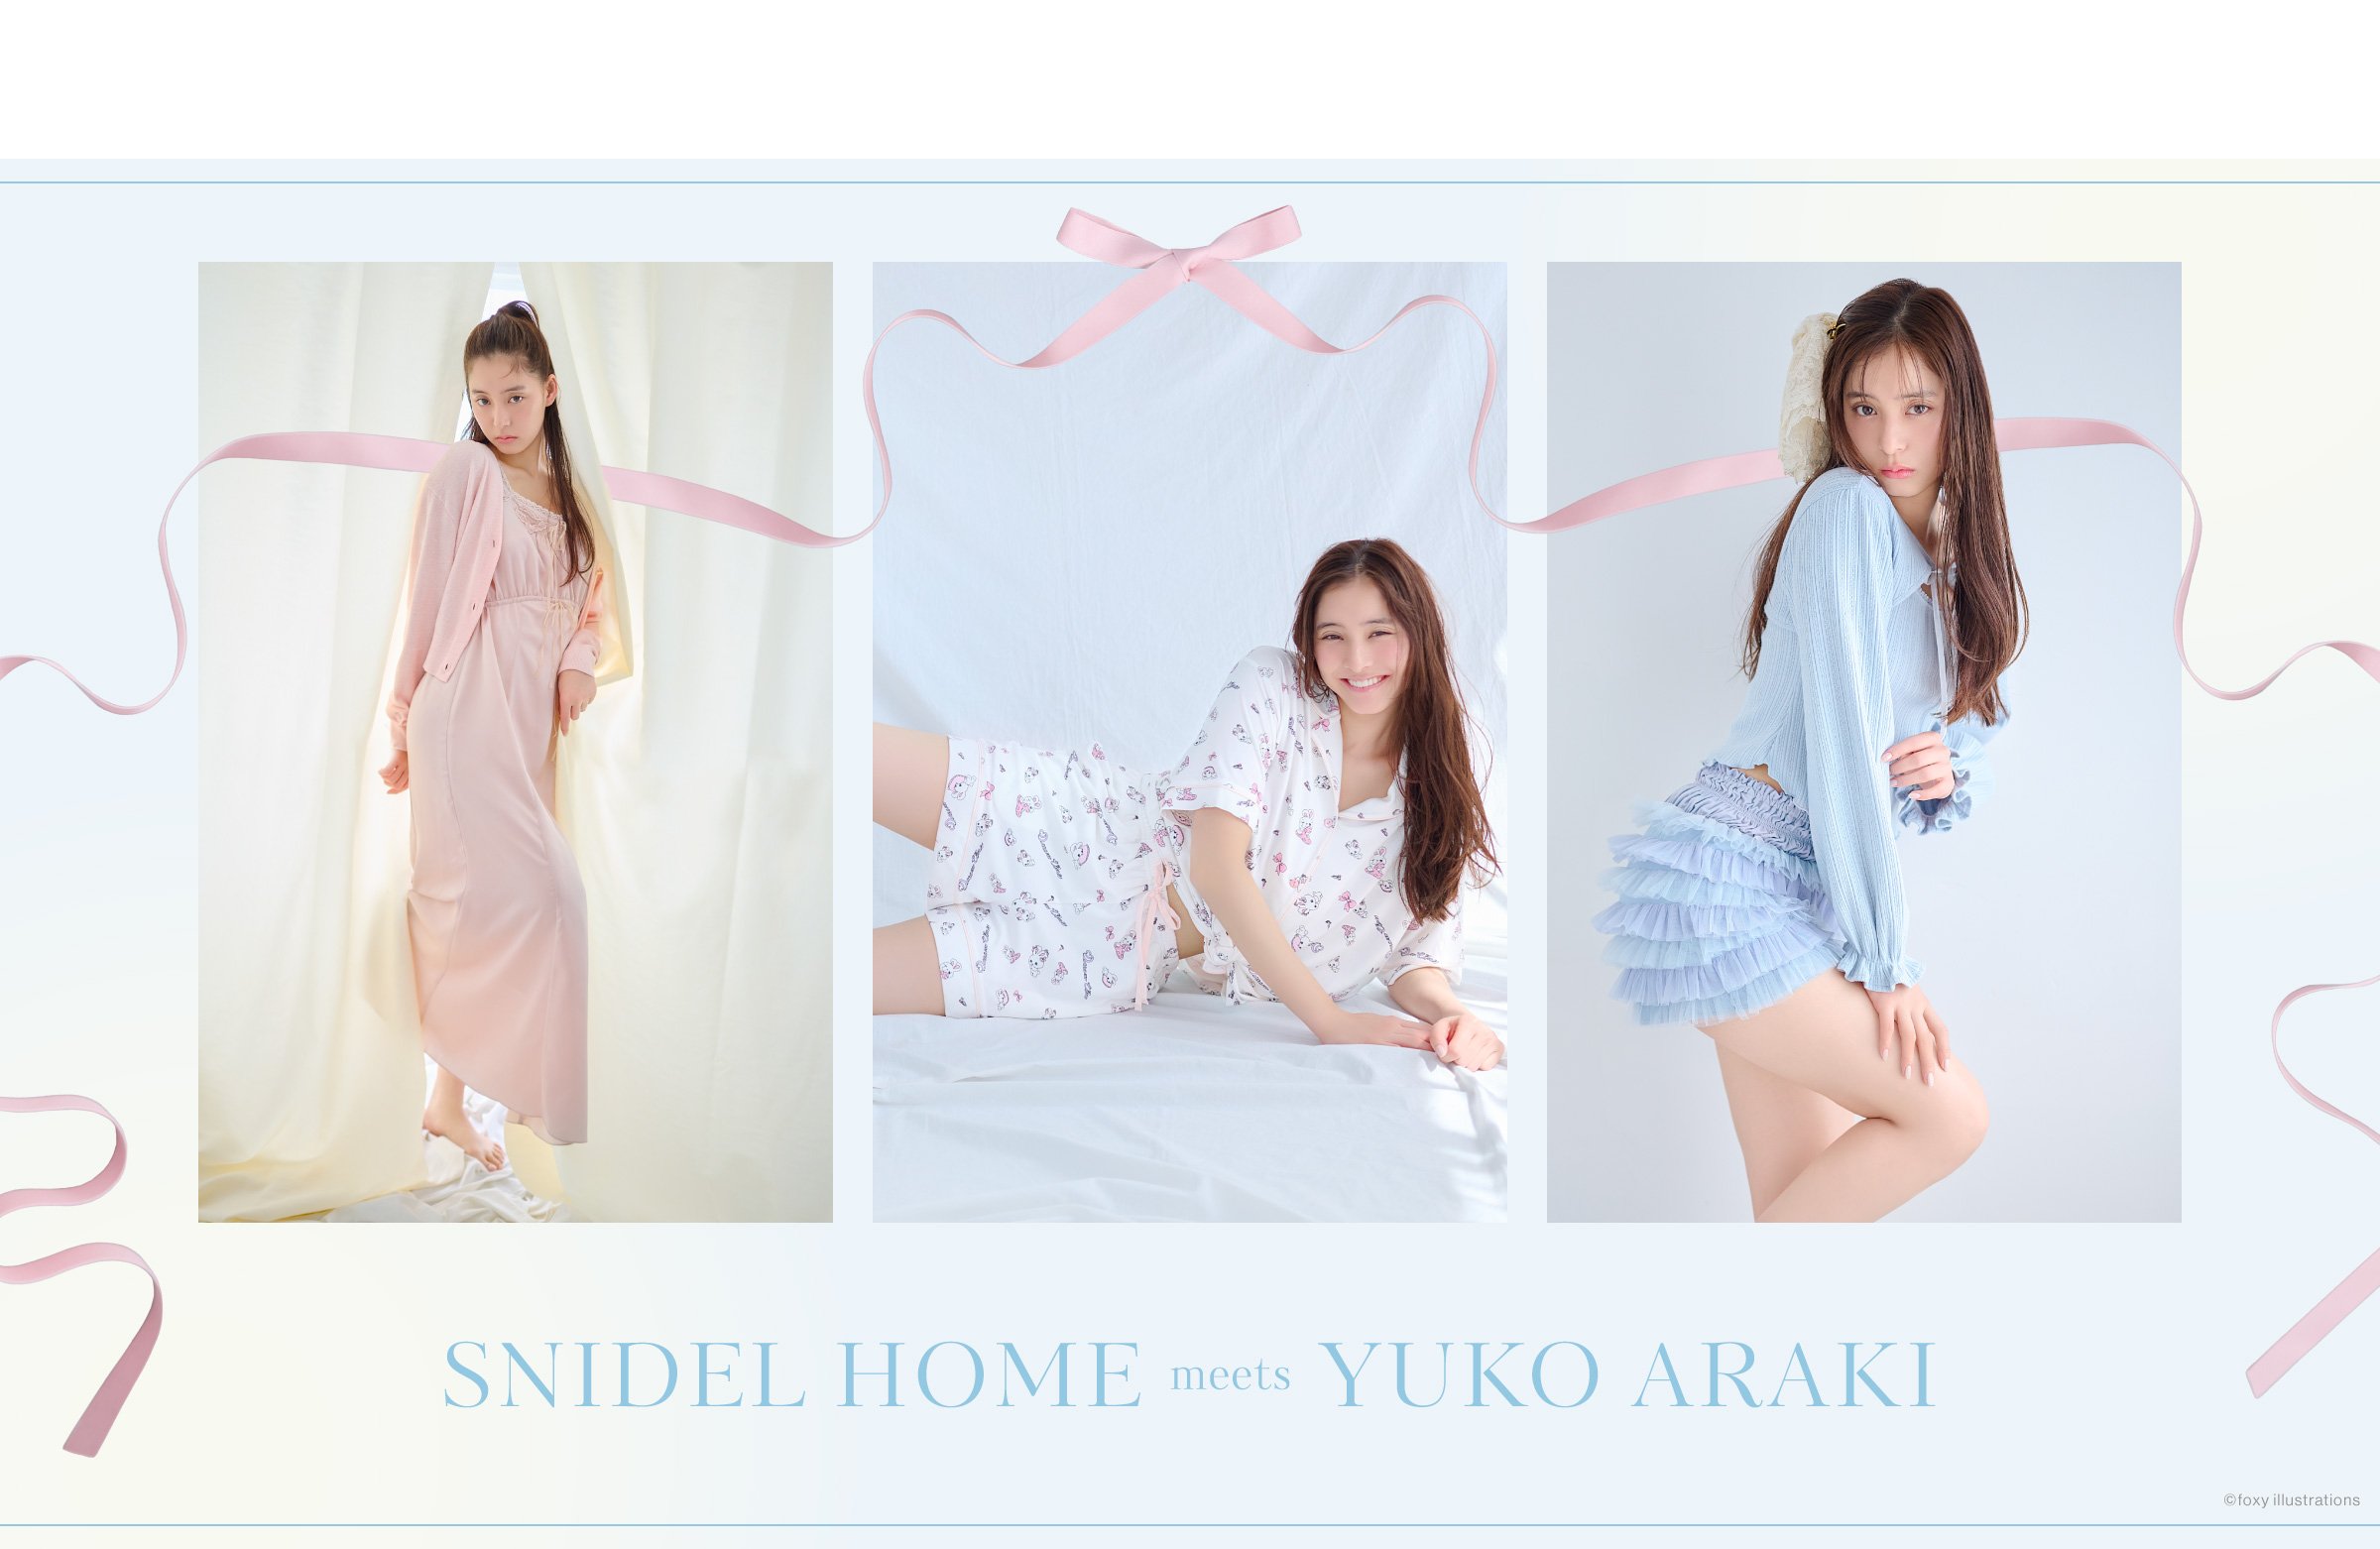 SNIDEL HOME meets YUKO ARAKI